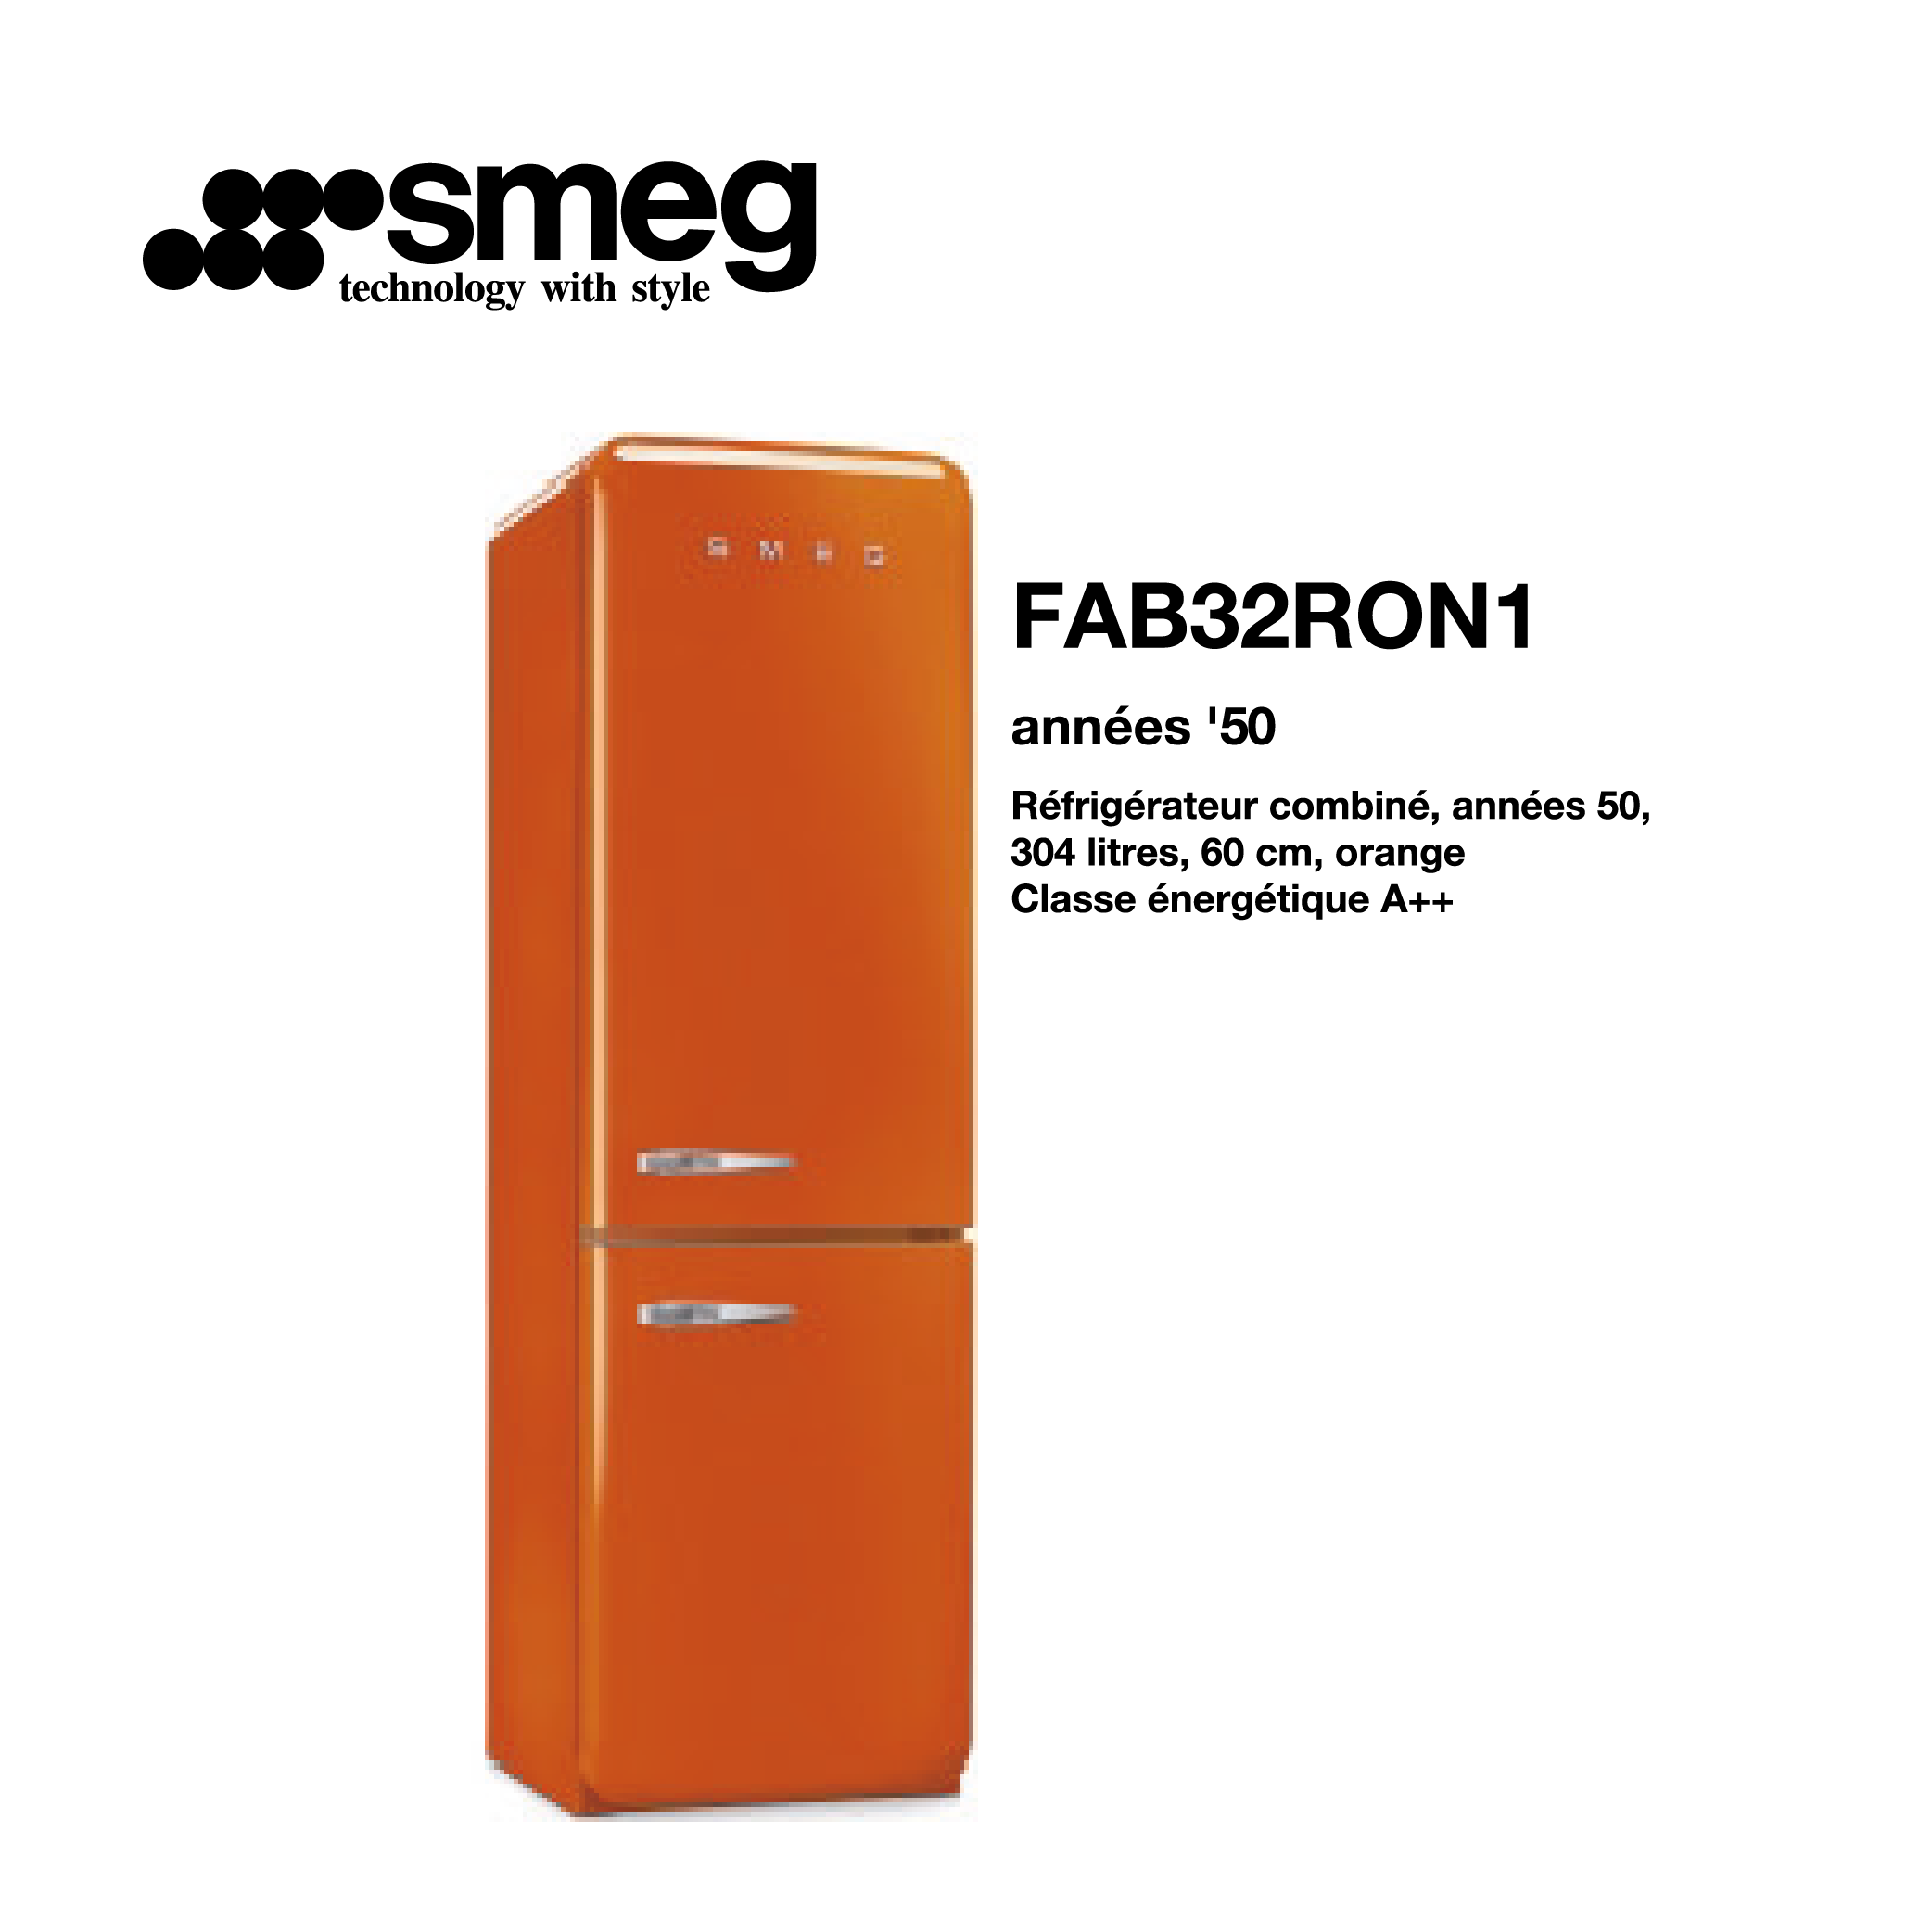 Réfrigérateur combiné smeg 304 litre – 60cm couleur Orange FAB32RON1